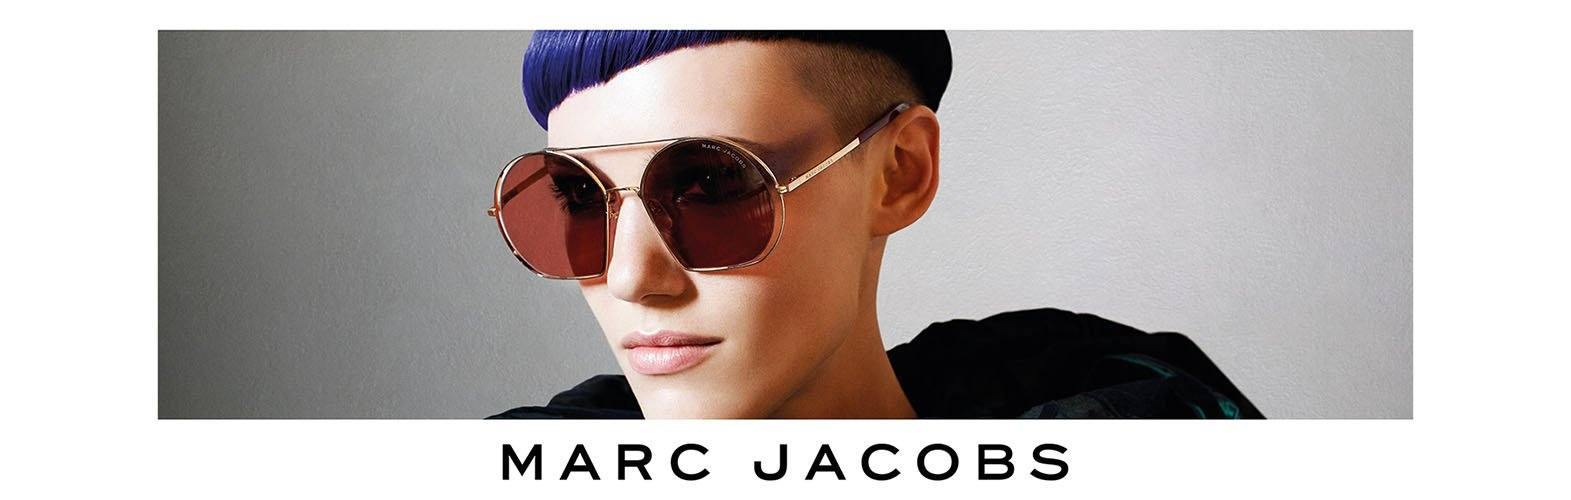 Marc Jacobs Marc 553/S Sunglasses